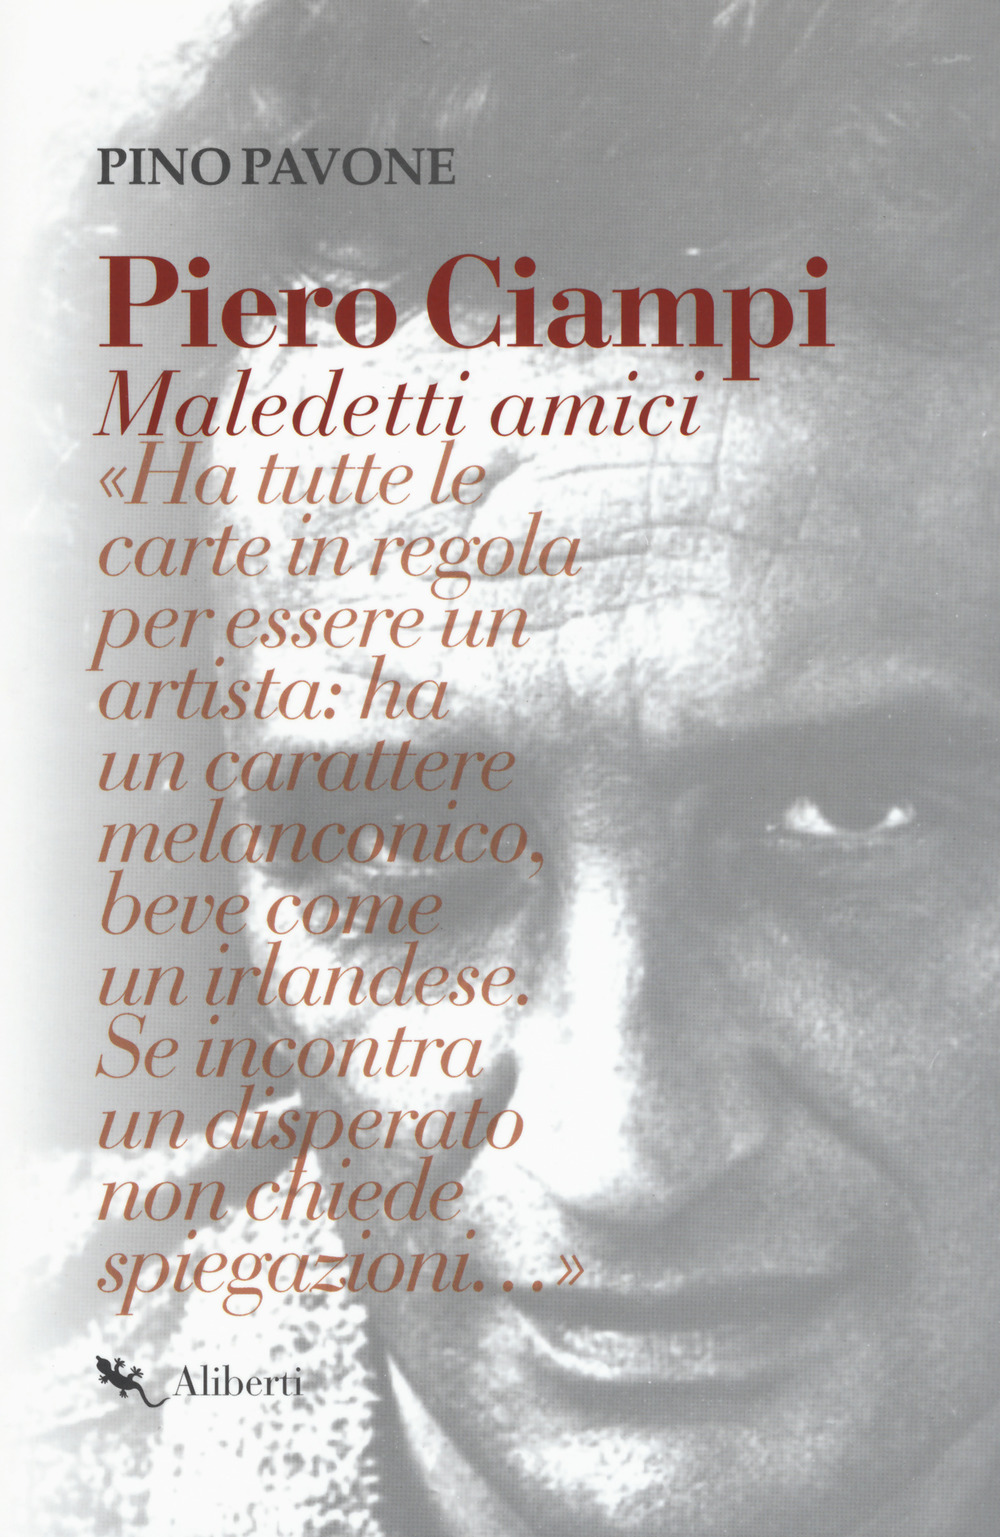 Piero Ciampi. Maledetti amici